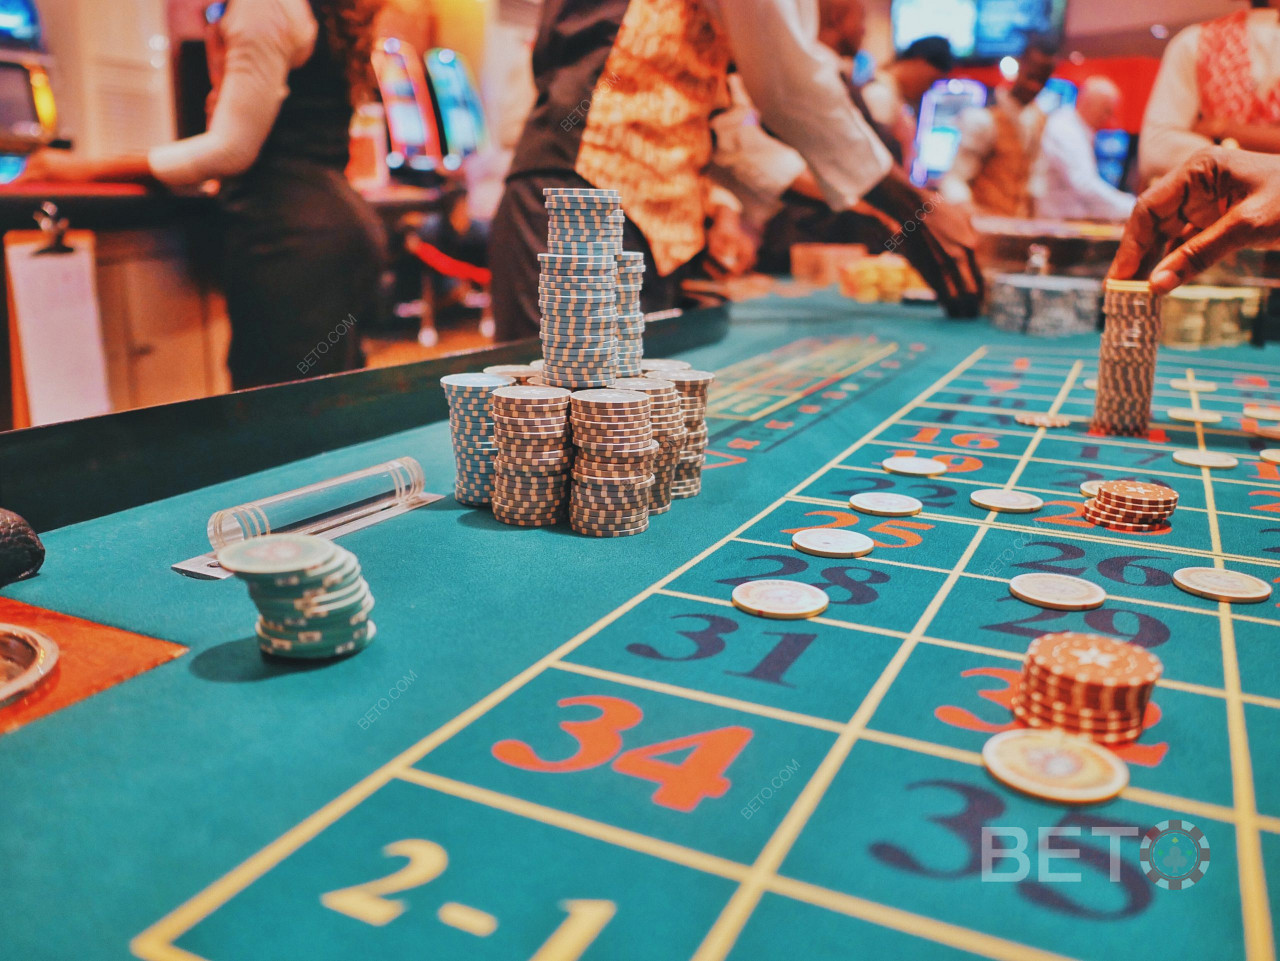 888 é um dos melhores operadores de casino do mercado. Joga blackjack e outros jogos.